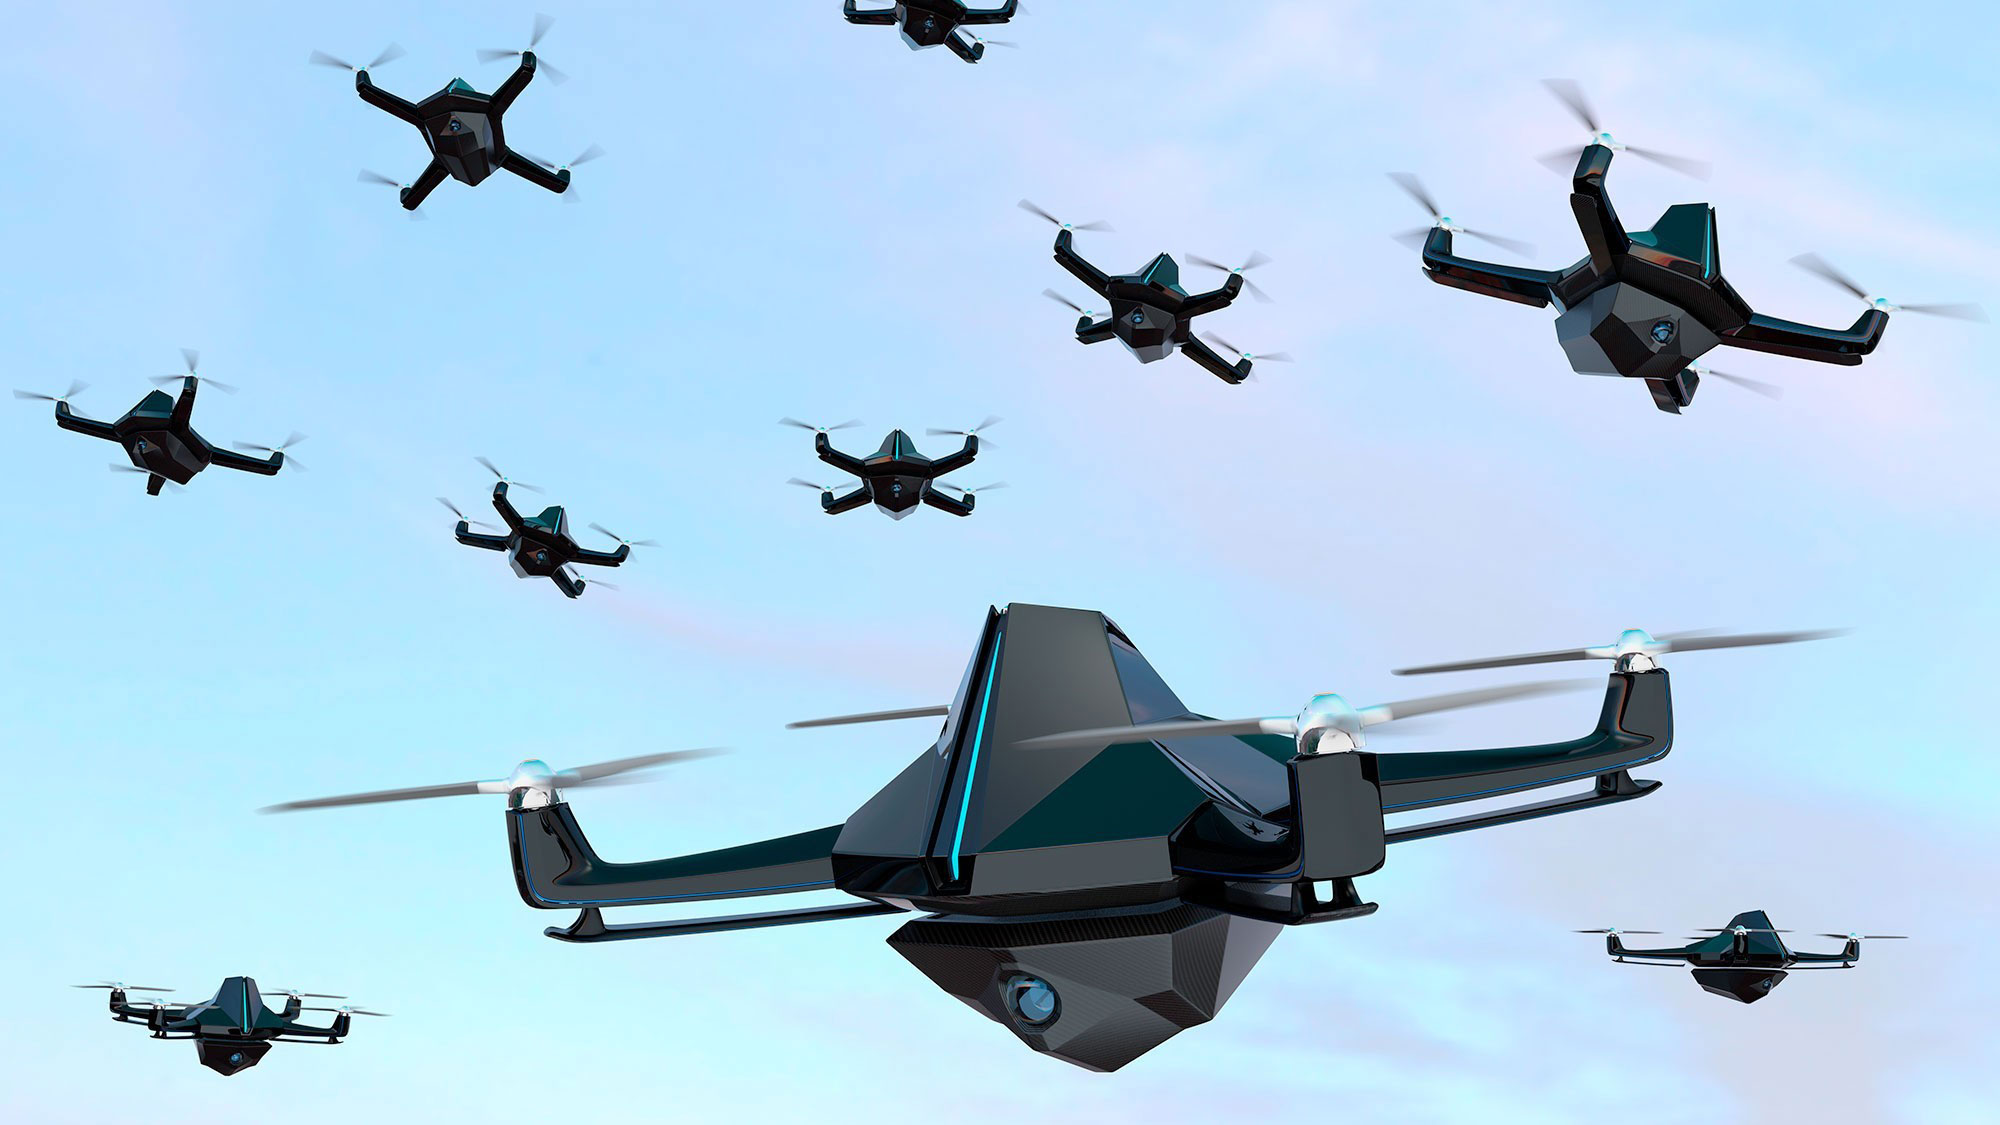 Tech: A nova tecnologia militar permite a uma pessoa controlar 130 drones